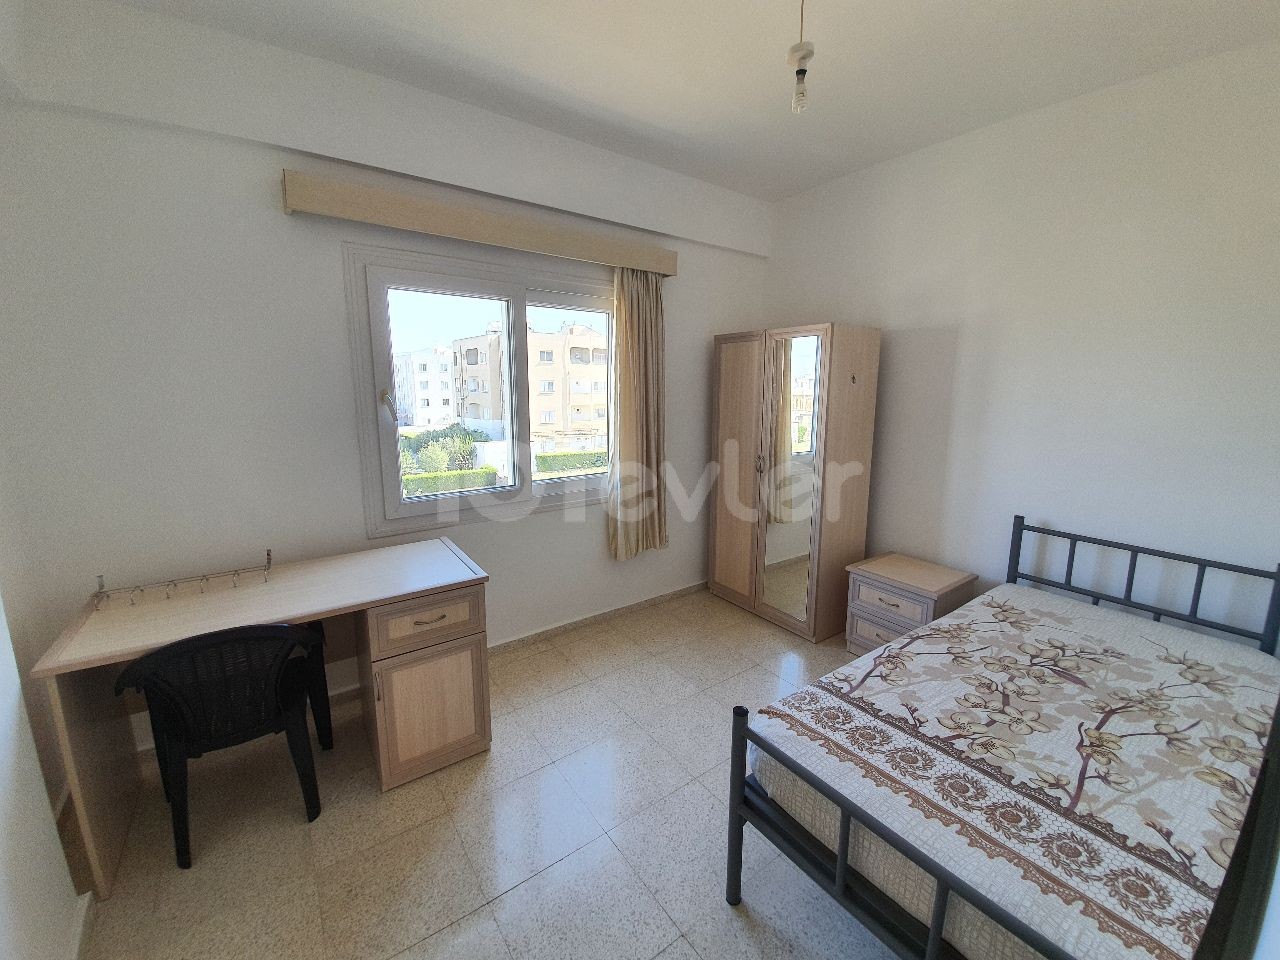 آپارتمان 2+1 برای اجاره GÖNYELİ/NICOSIA/TRNC (پرداخت ماهانه)